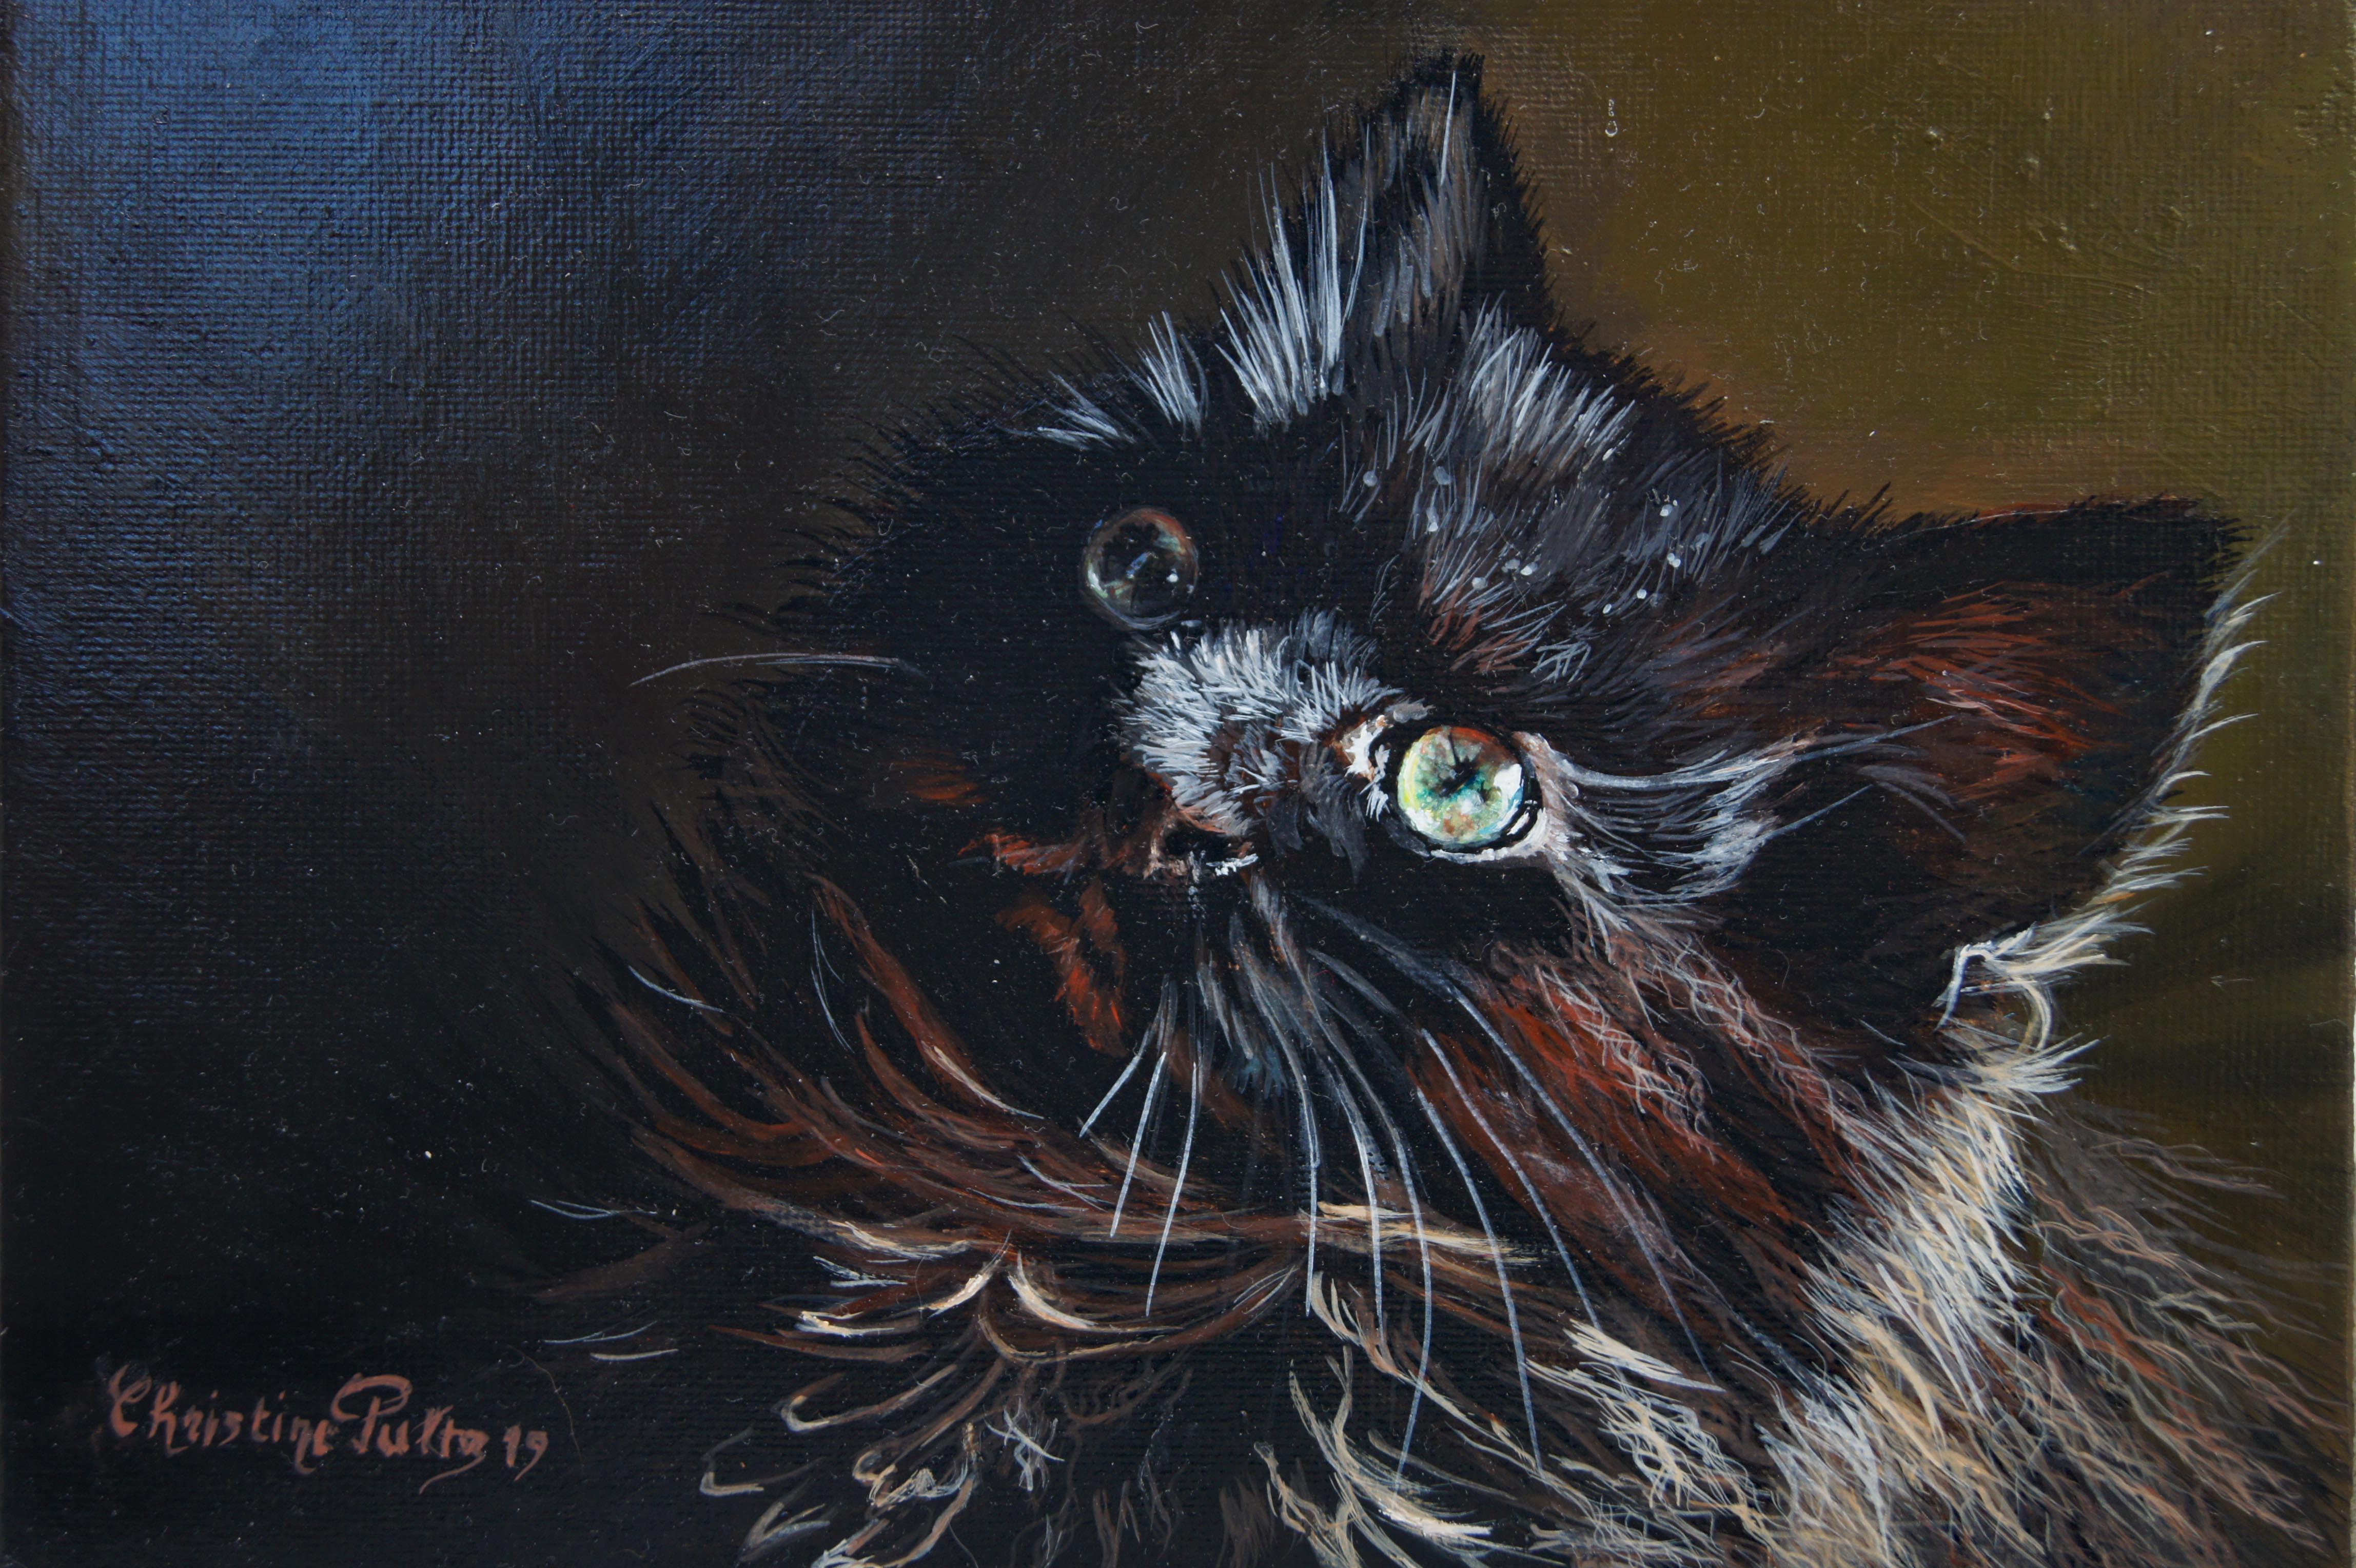 Acryl auf Leinwand

Christine Pultz ist eine französische Tiermalerin, die 1953 geboren wurde und in Pontault-Combault, Frankreich, lebt und arbeitet. Durch ihre Leidenschaft für das Malen von Tieren, insbesondere von Katzenporträts, spürt Christine